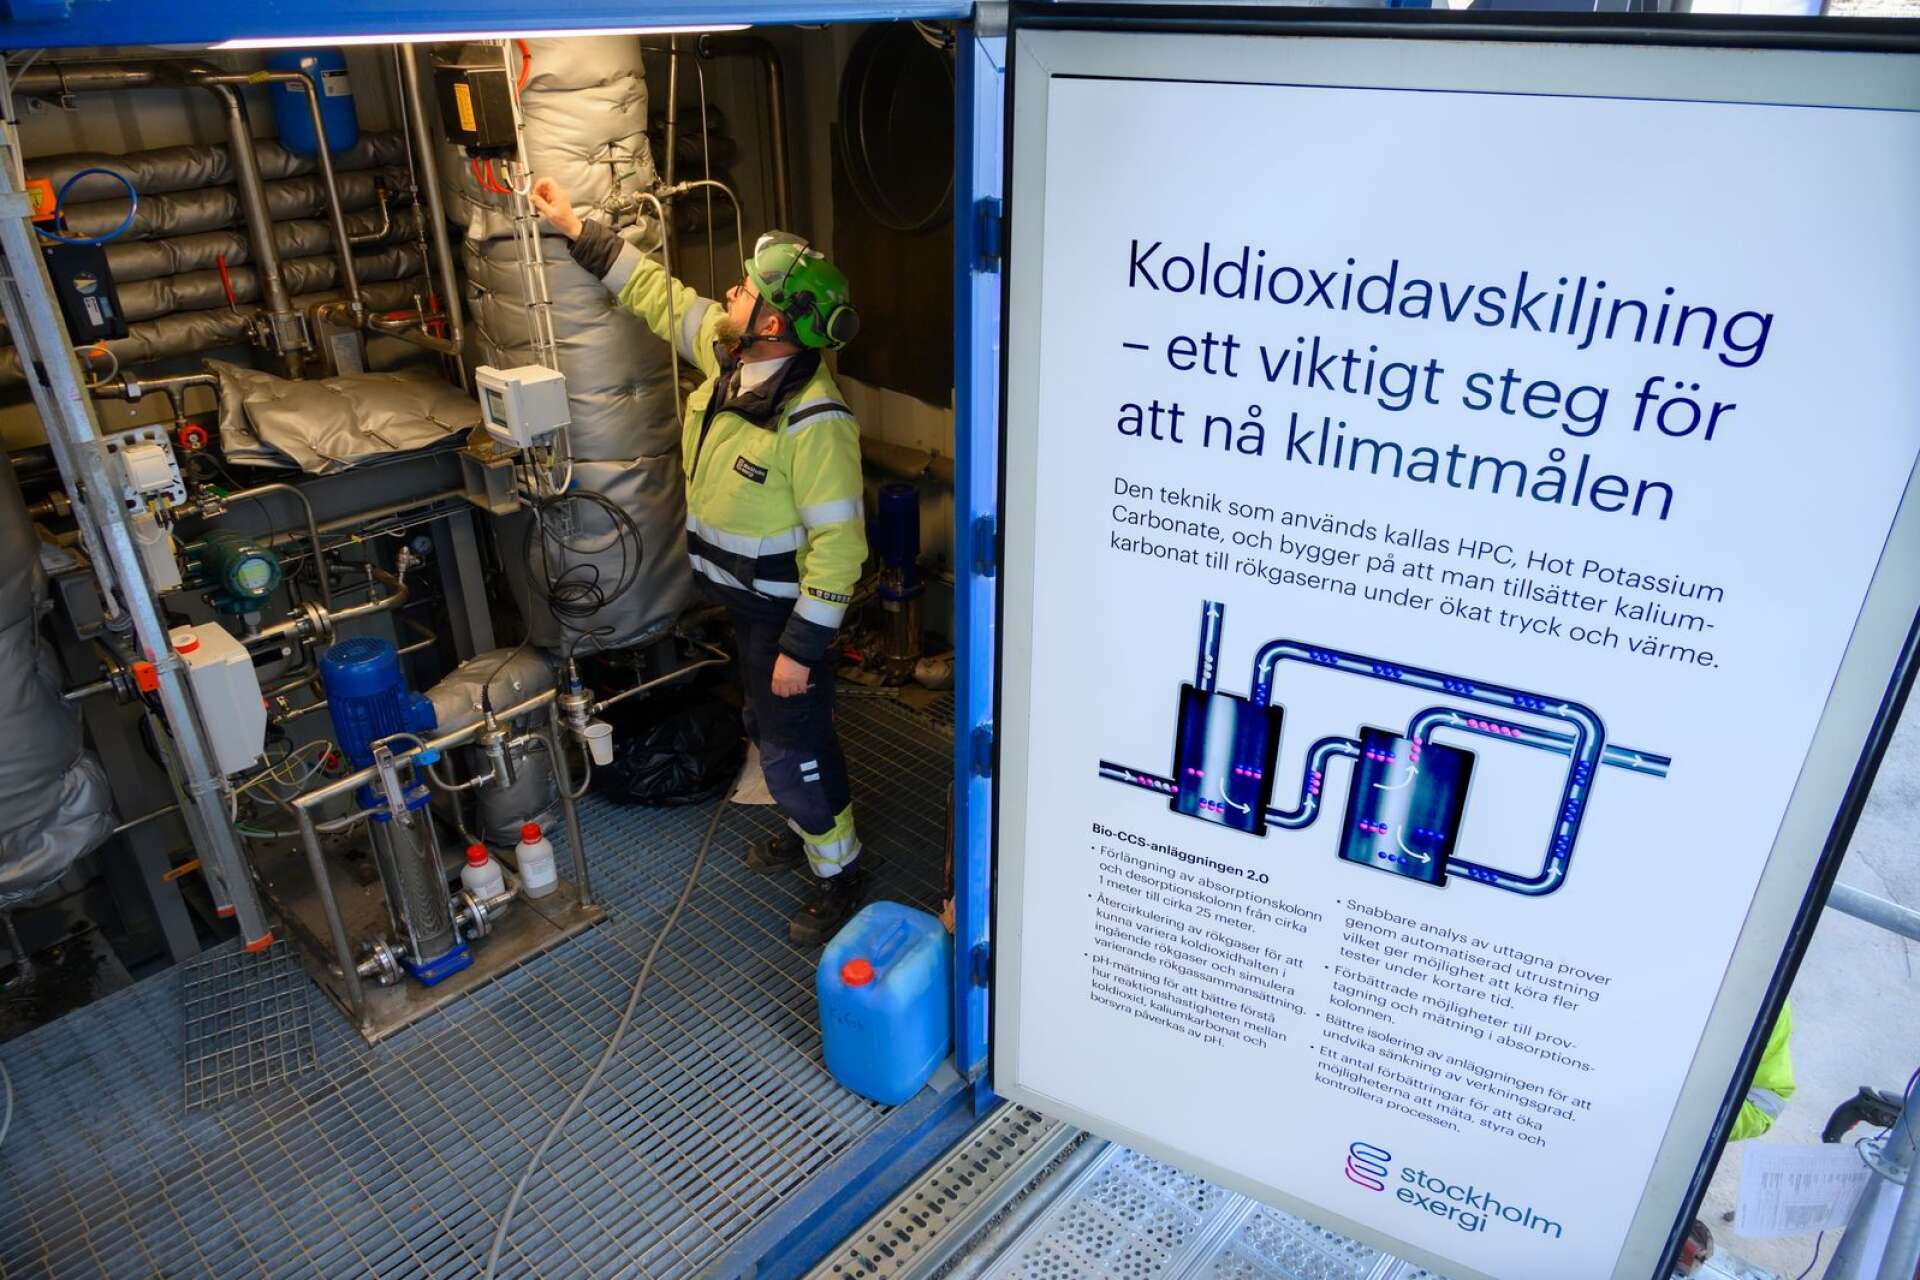 Värtaverket i Stockholm har en forskningsanläggning som ska ta bort koldioxiden från biokraftvärmeverkets rök. Fullt utvecklad kan den fånga in mer koldioxid som trafiken i huvudstaden släpper ut varje år, enligt Stockholm exergi.